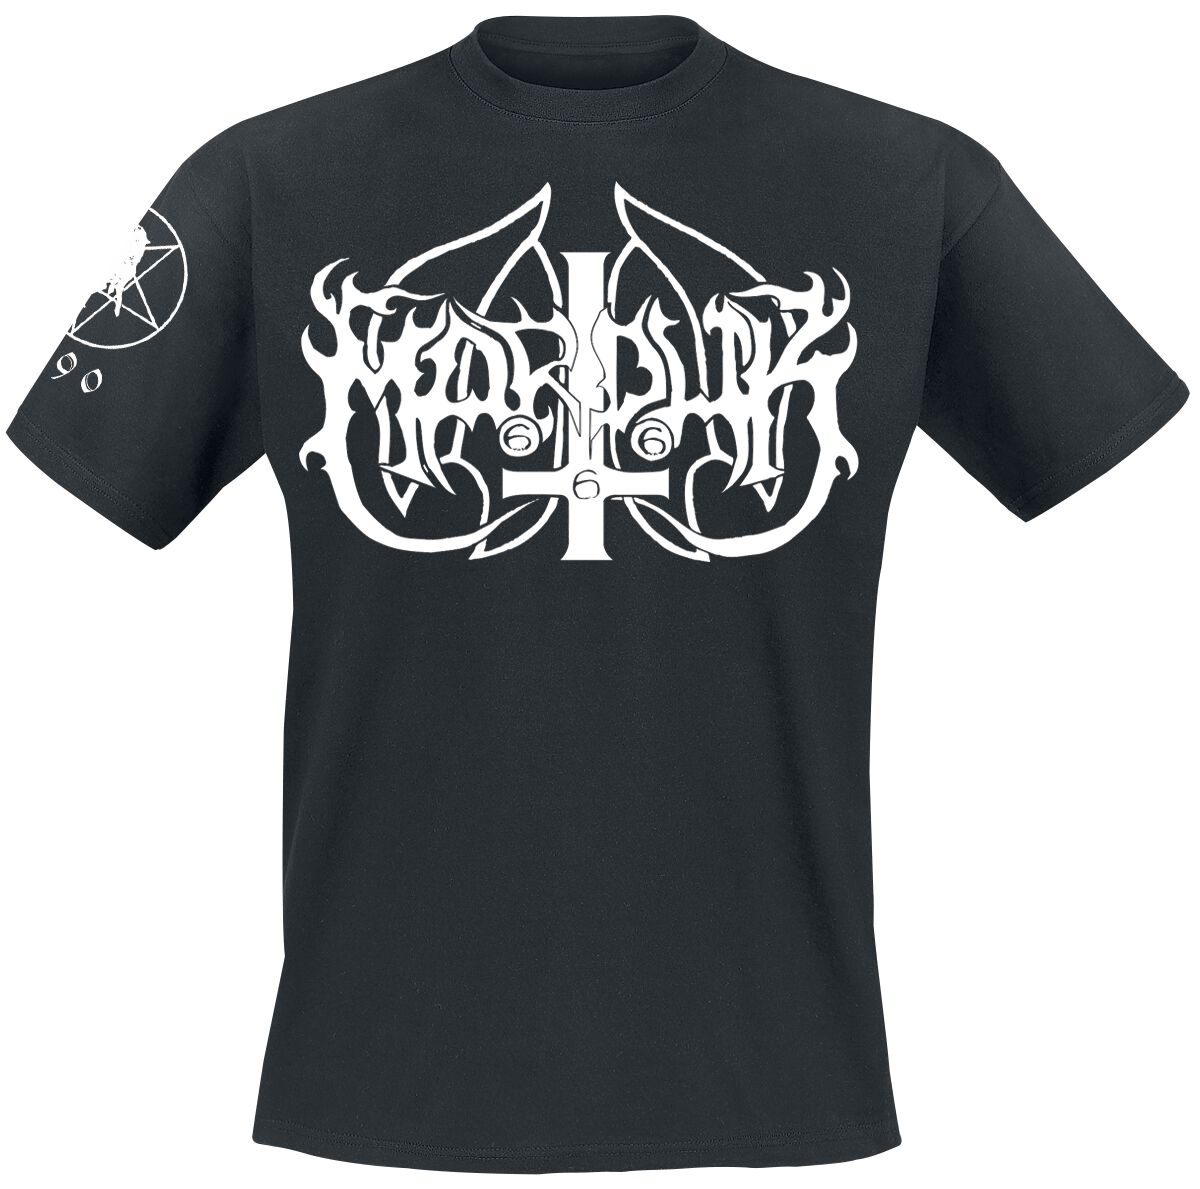 Marduk T-Shirt - Marduk Legion - L bis XXL - für Männer - Größe L - schwarz  - Lizenziertes Merchandise!